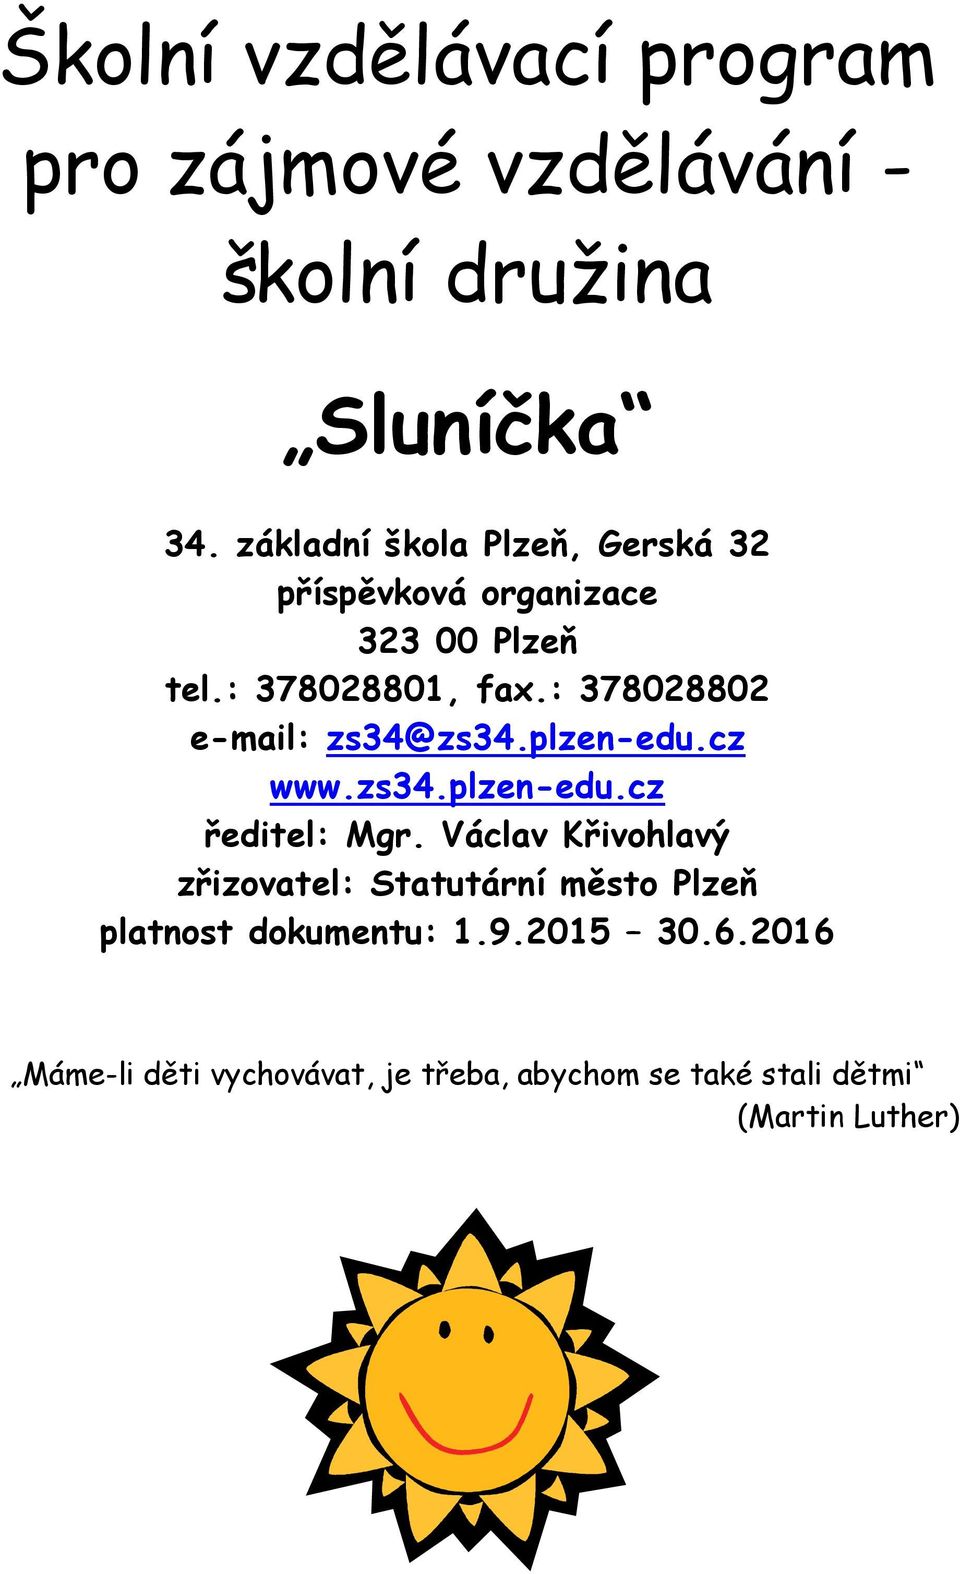 : 378028802 e-mail: zs34@zs34.plzen-edu.cz www.zs34.plzen-edu.cz ředitel: Mgr.